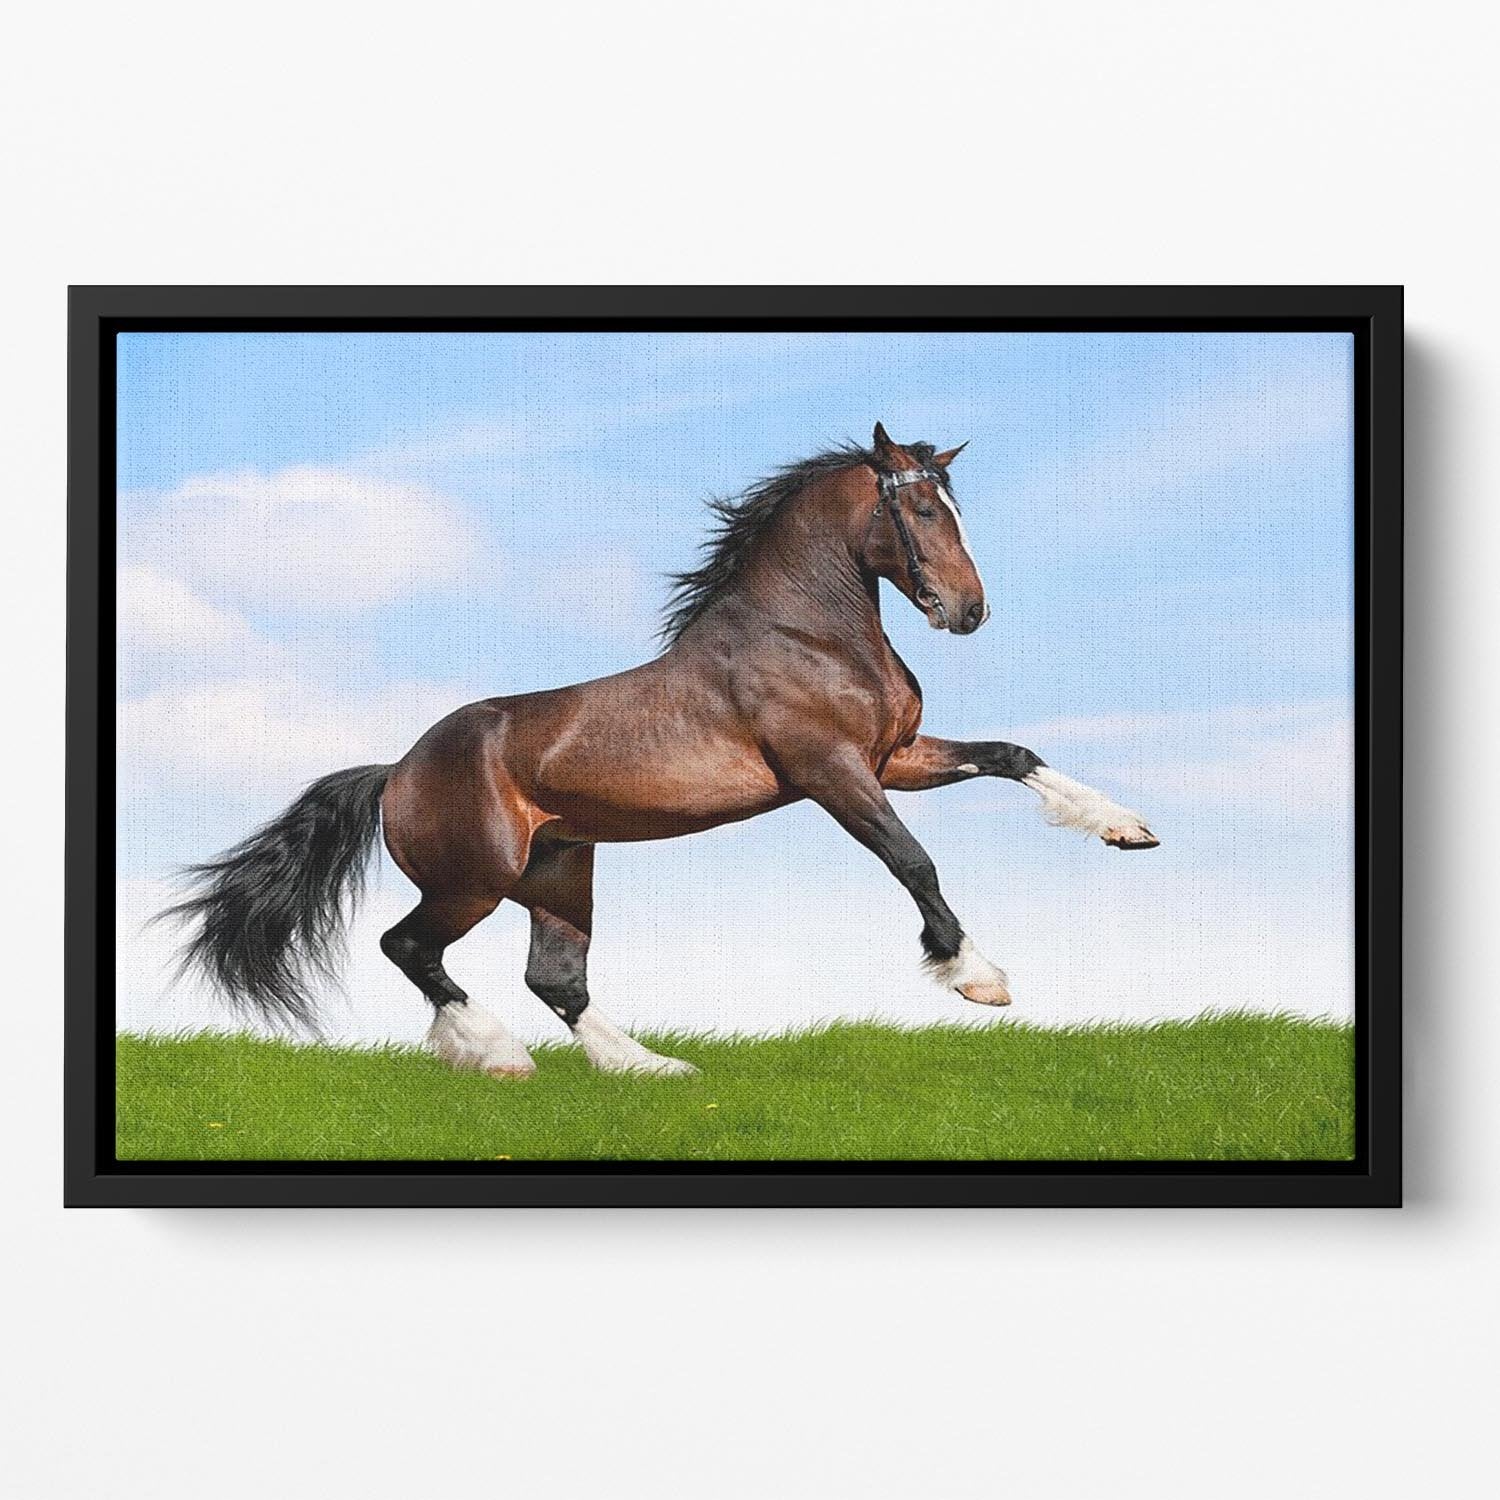 Bay horse running in field Floating Framed Canvas - Canvas Art Rocks - 2